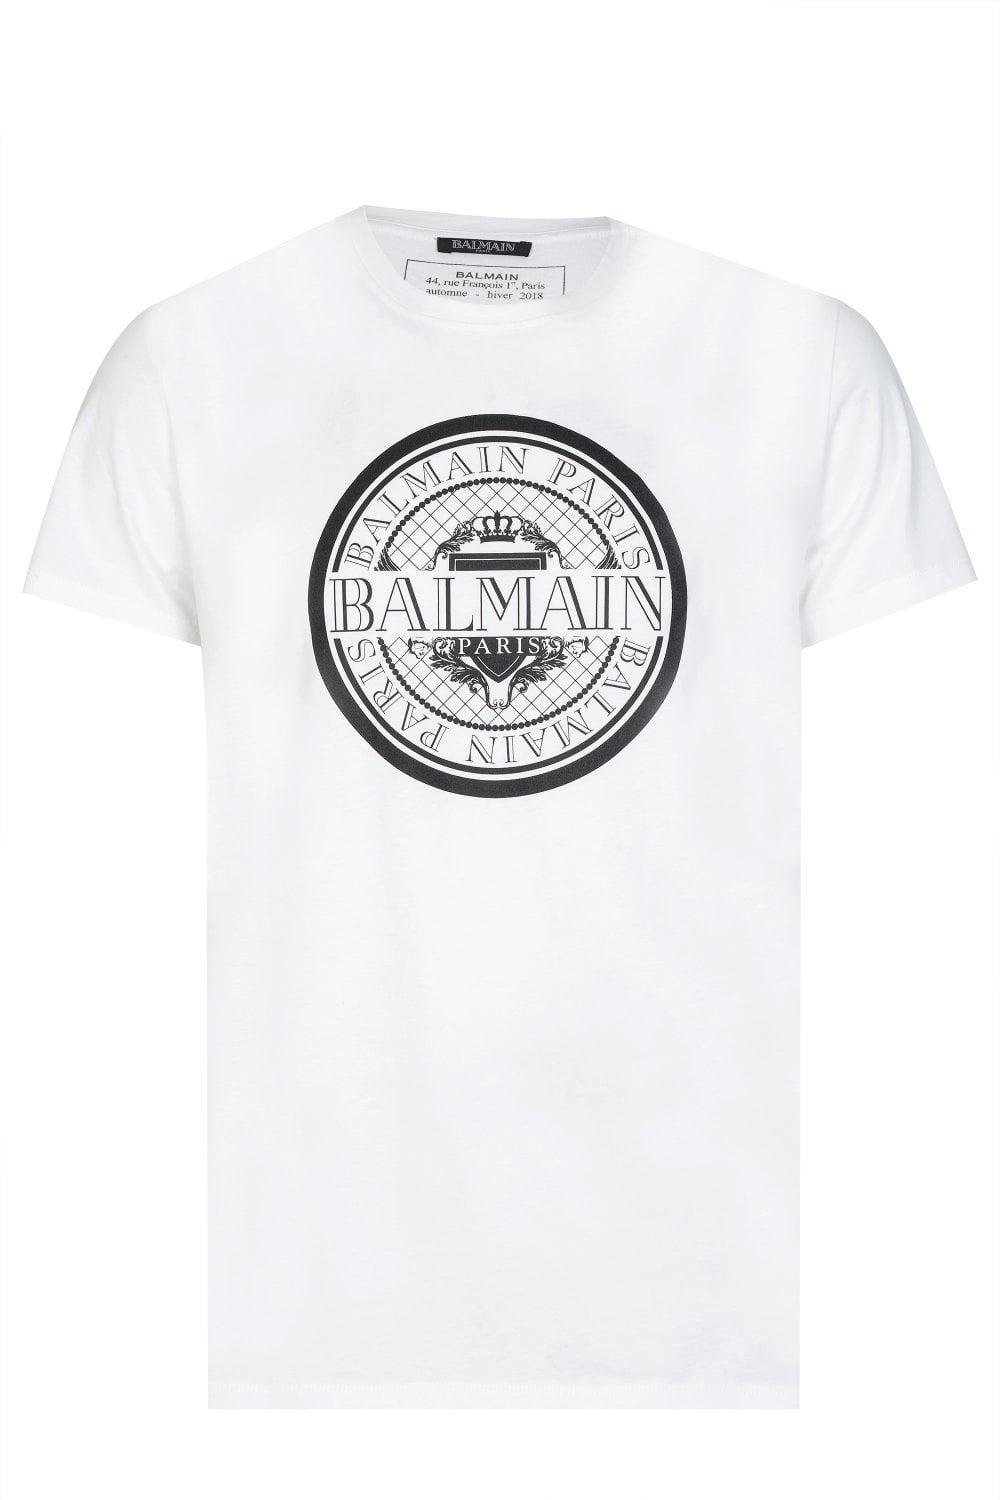 Balmain Paris Logo - BALMAIN Balmain Paris Coin Logo T Shirt From Circle